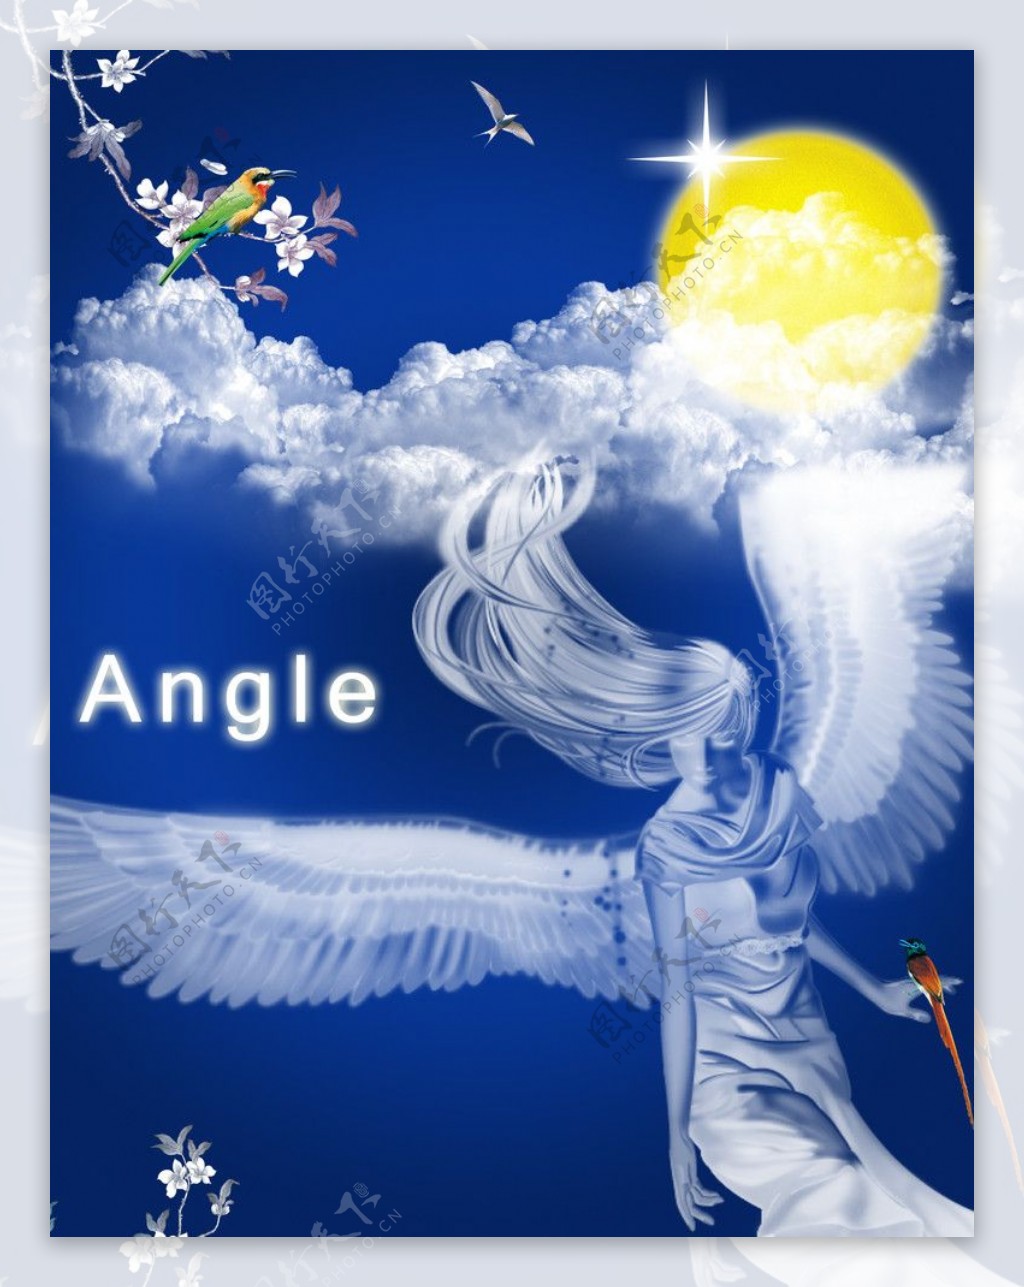 祷告的天使 由 yanwanwill 创作 | 乐艺leewiART CG精英艺术社区，汇聚优秀CG艺术作品